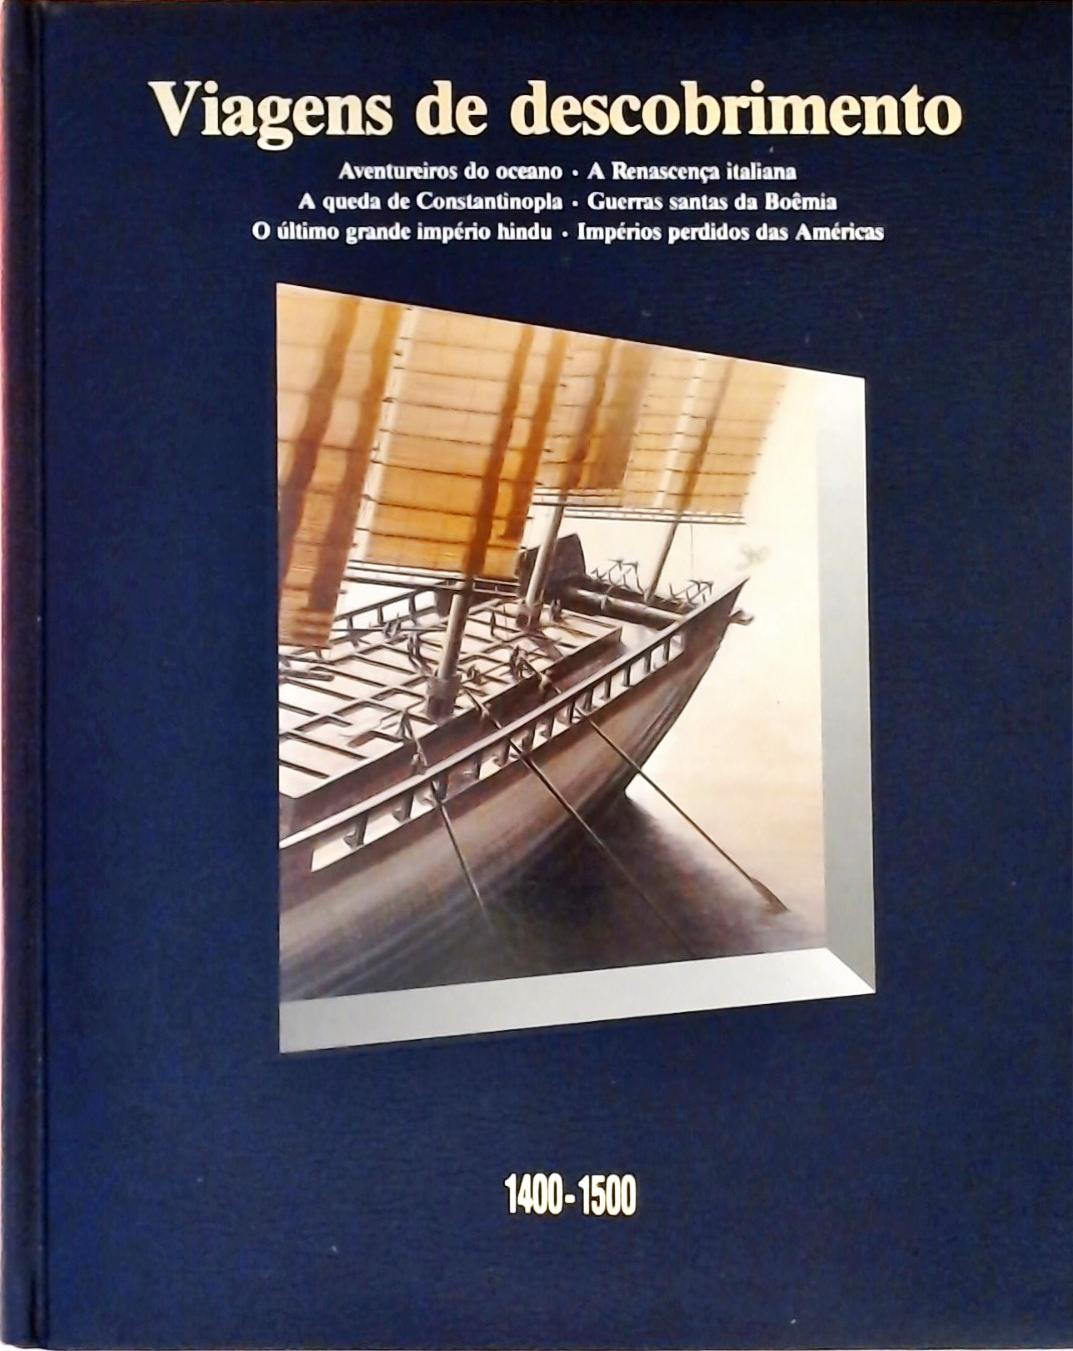 Viagens de Descobrimento (1400-1500)